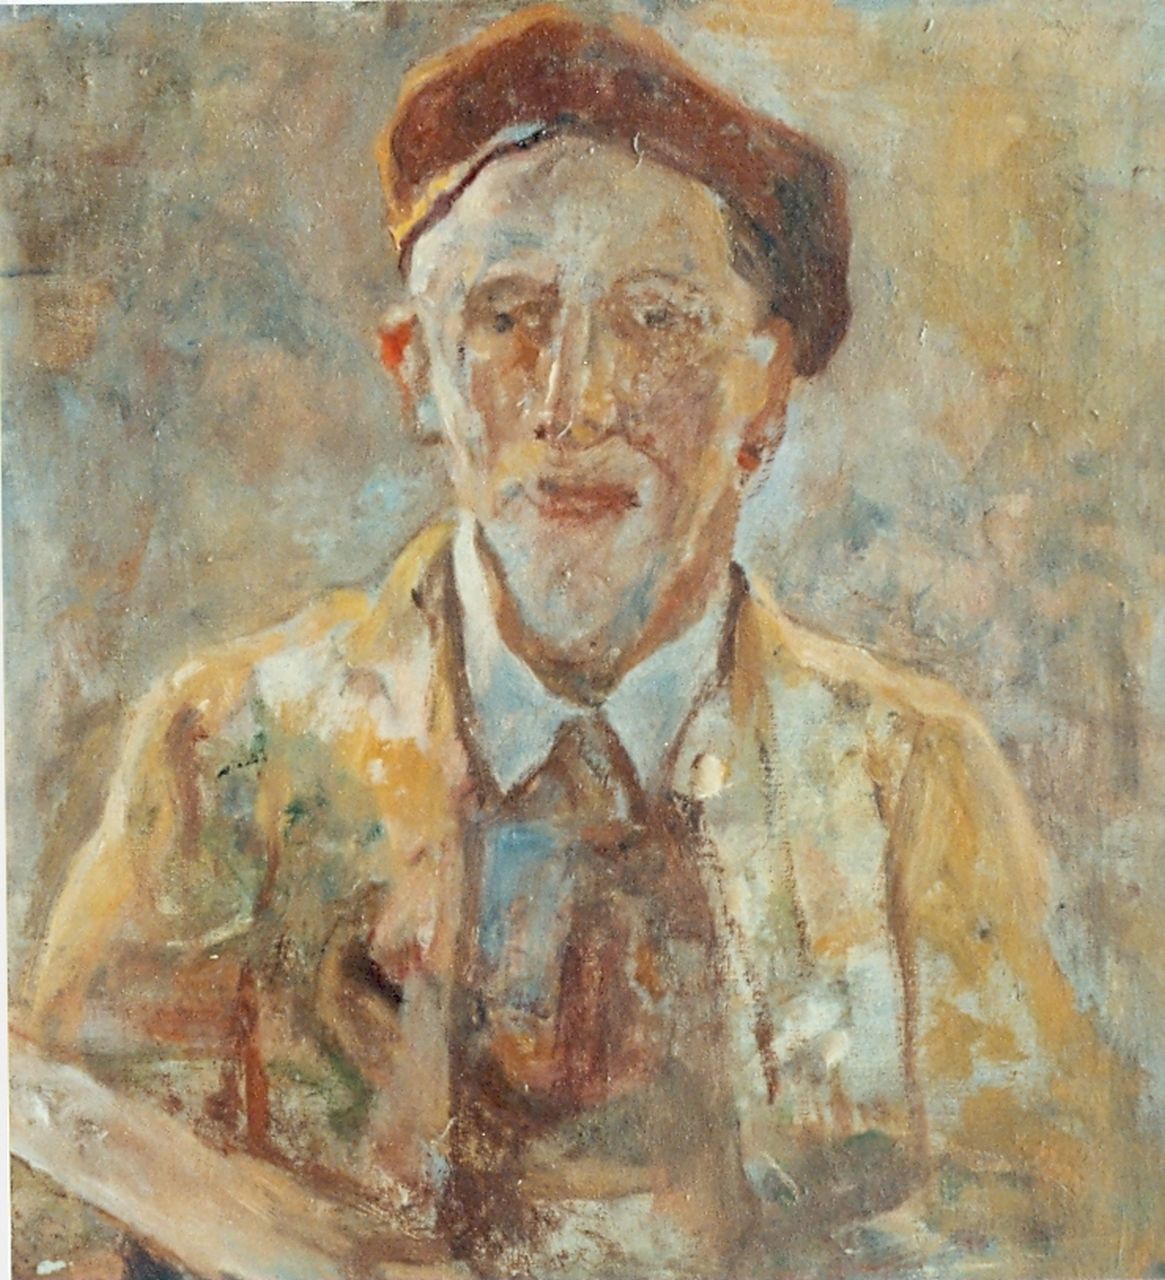 Rivière A.P. de la | Adrianus Philippus 'Adriaan' de la Rivière, Self-portrait, Öl auf Leinwand 42,0 x 40,2 cm